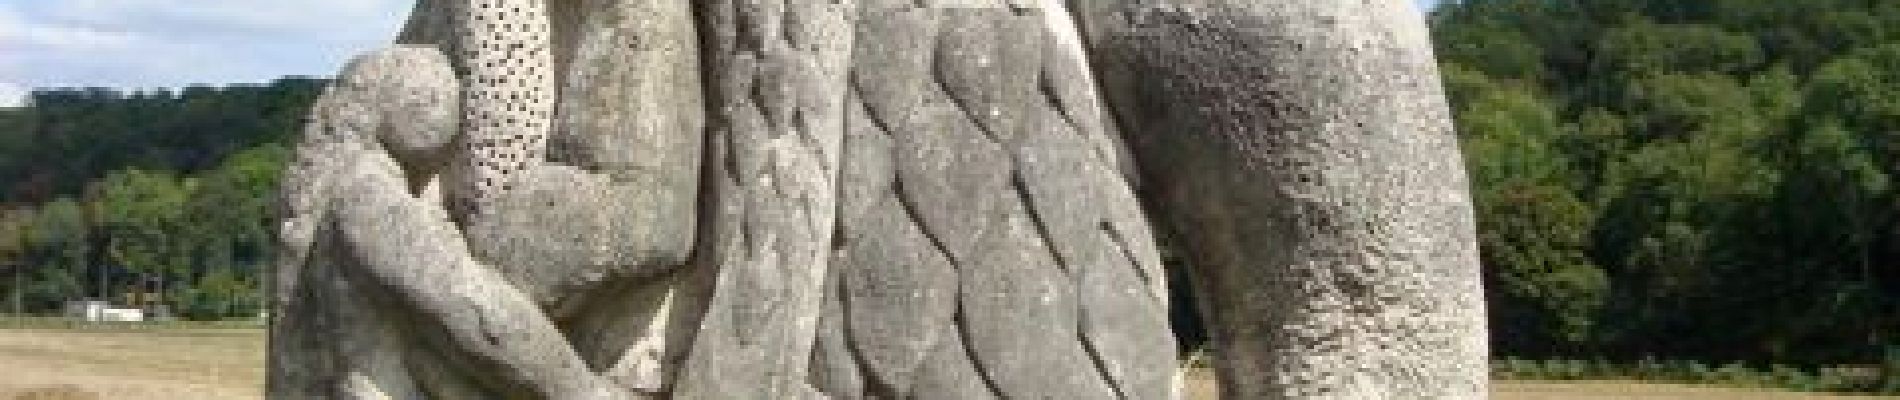 POI Chessy - Sculptures de la Dhuys - Photo